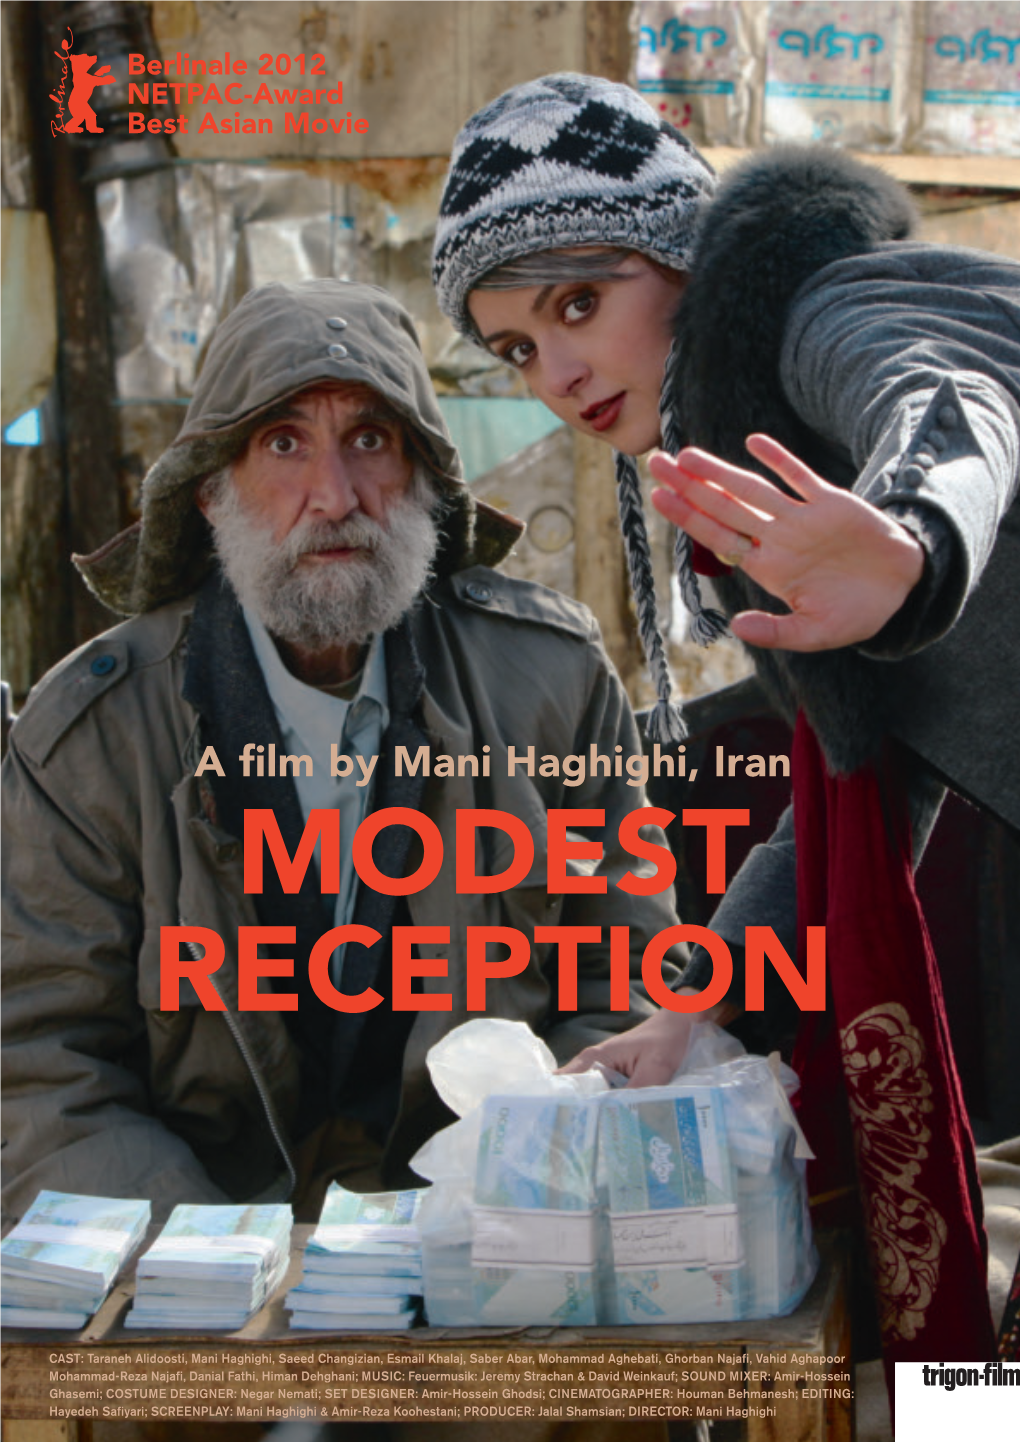 A Film by Mani Haghighi, Iran MODEST RECEPTION